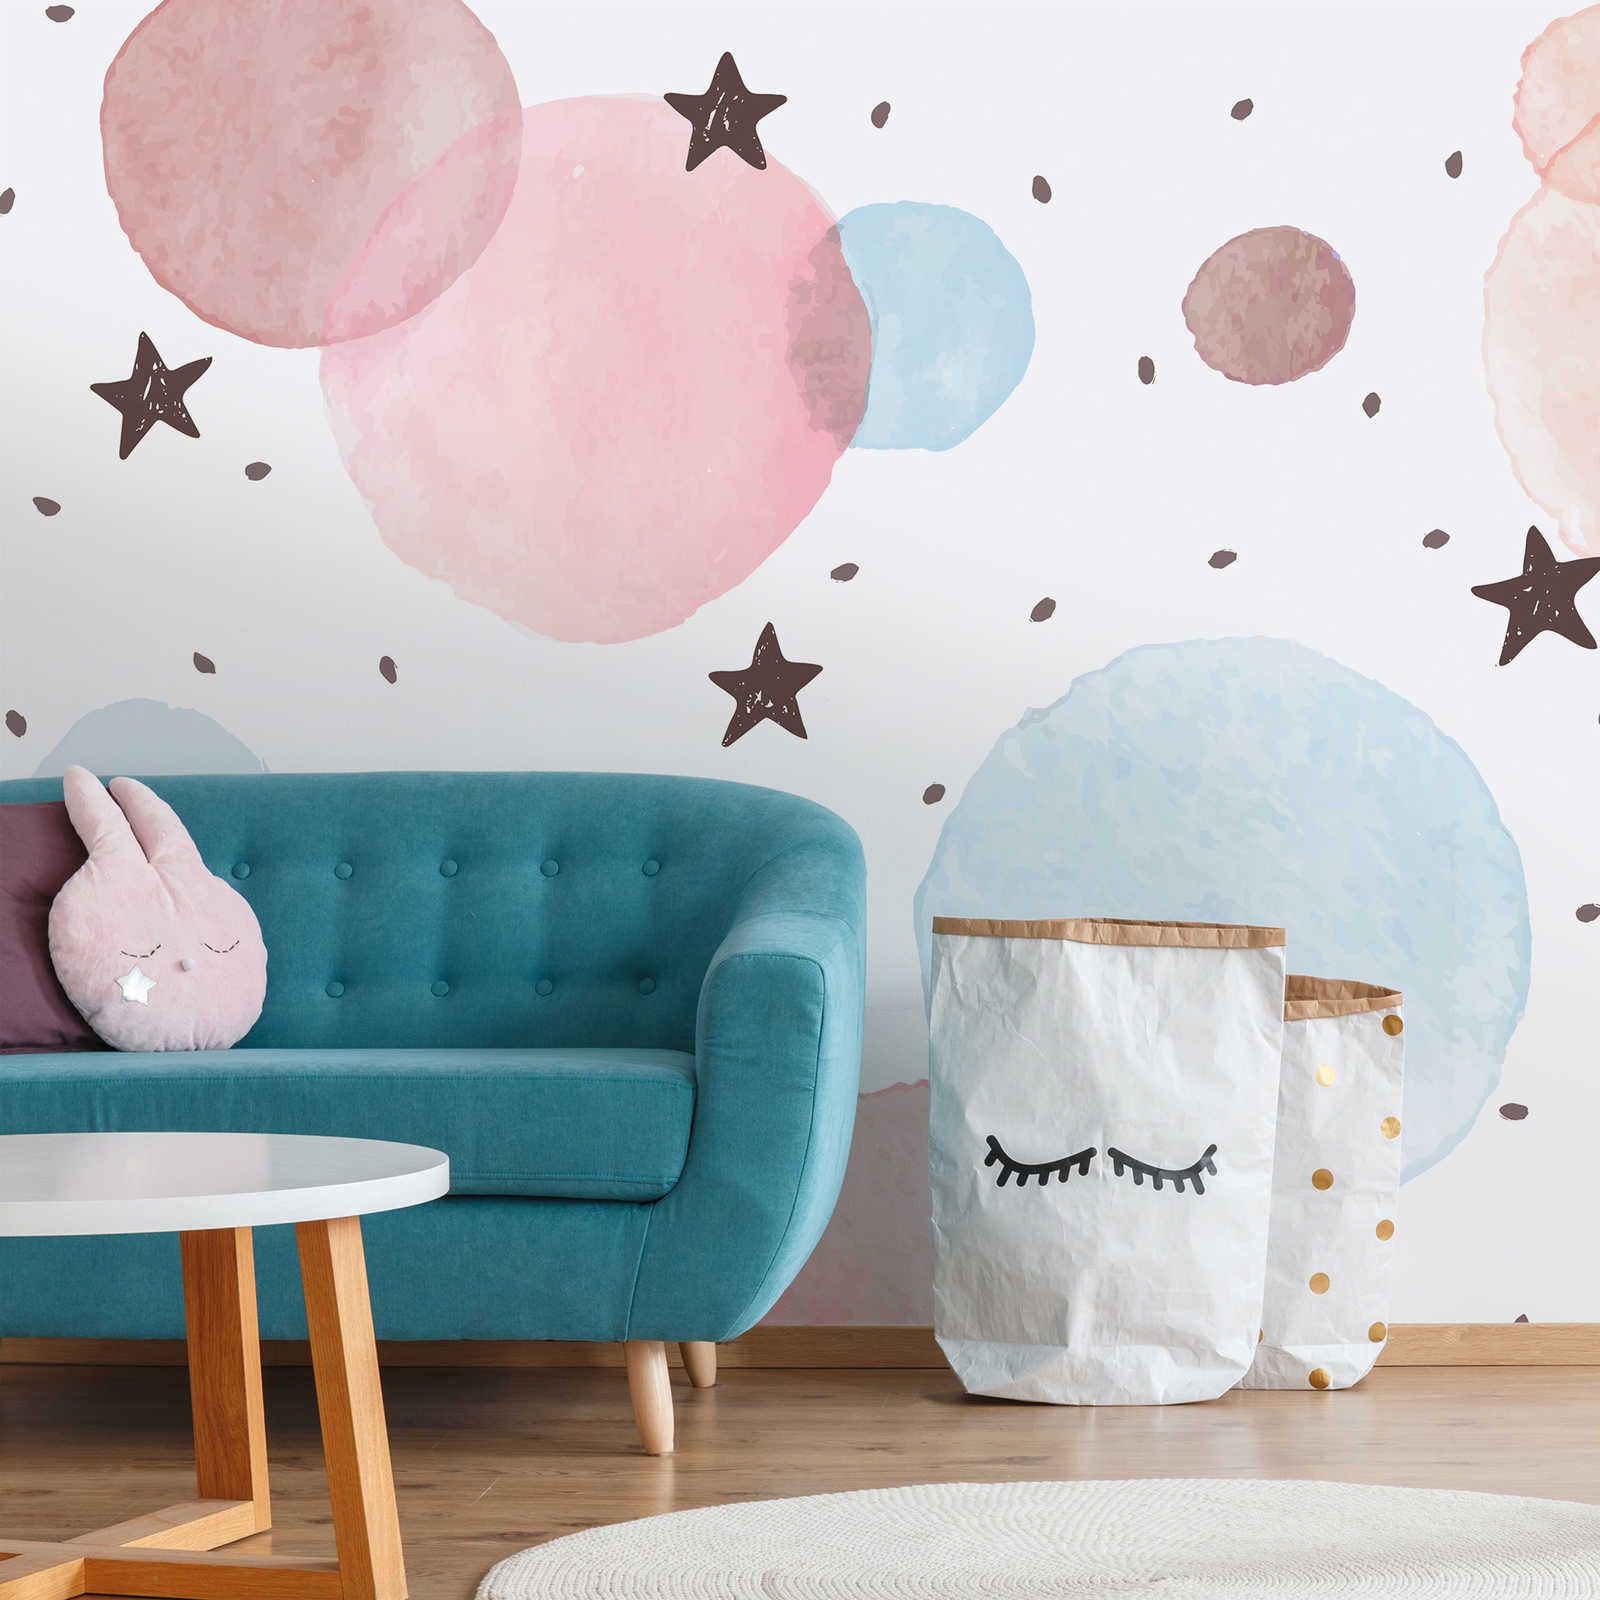 Papel pintado fotográfico para habitación infantil con estrellas, lunares y círculos - Material sin tejer liso y mate
